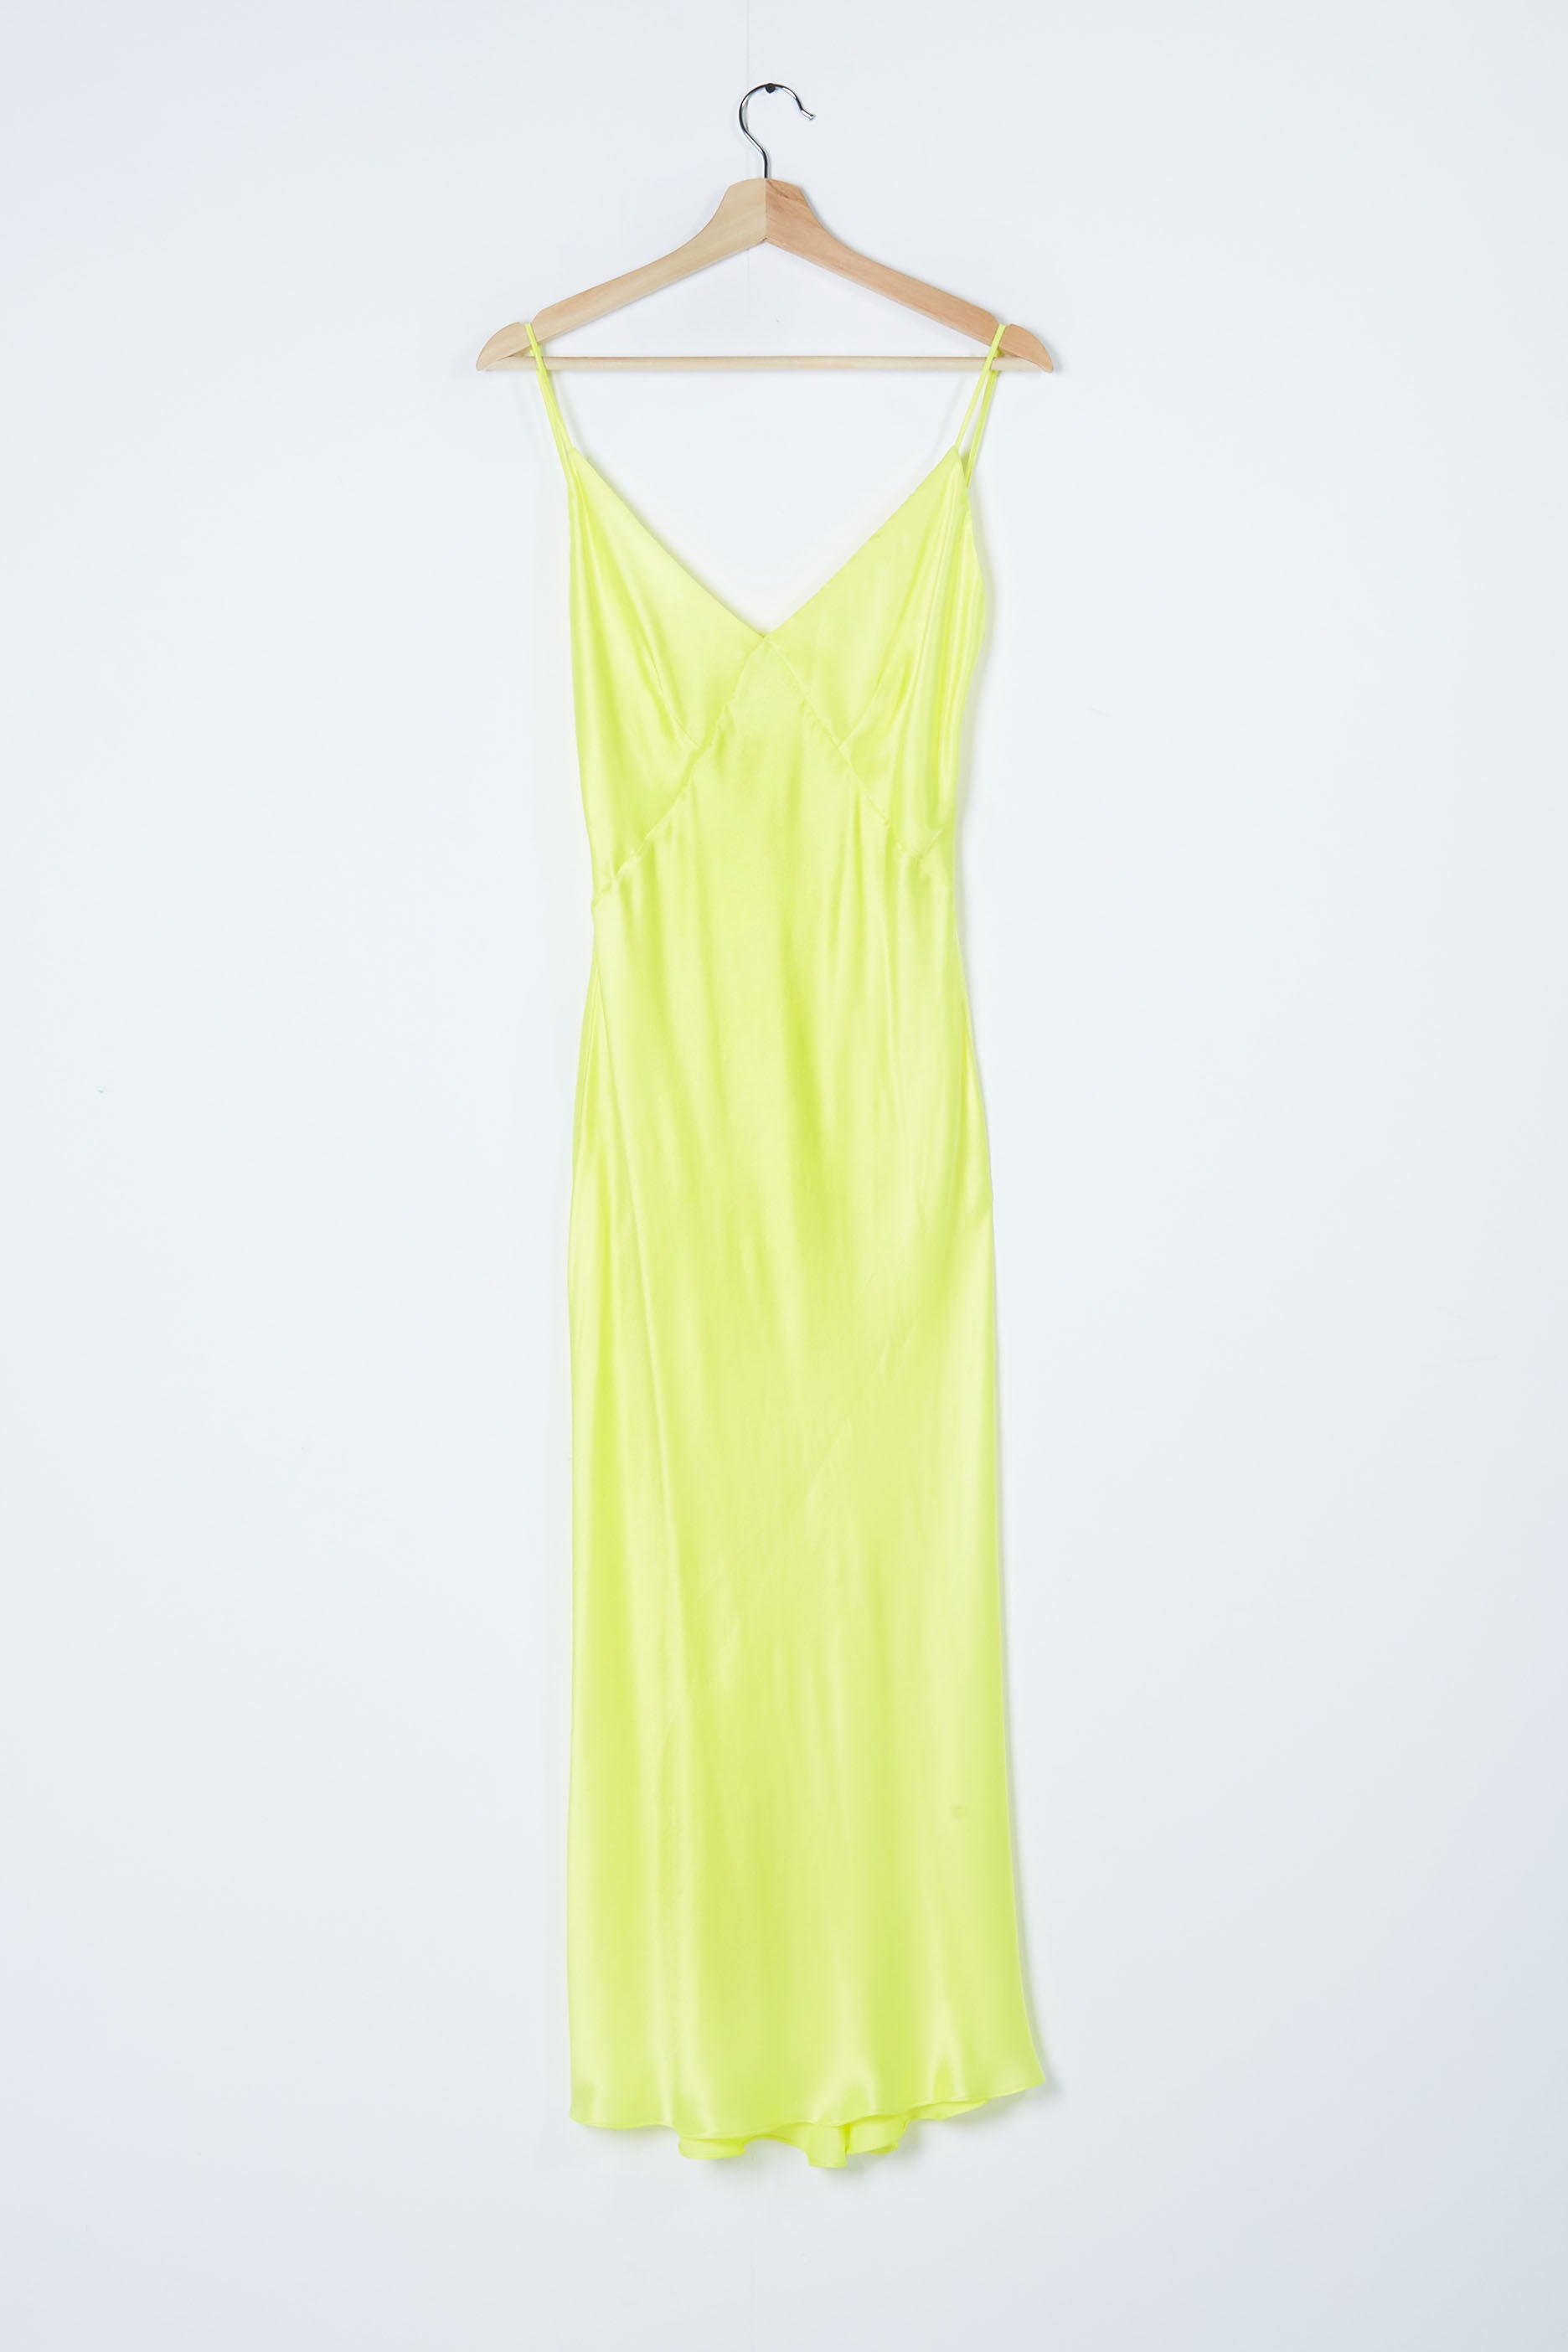 Highlighter Neon Yellow Silk Slip Dress (Eu36/38)